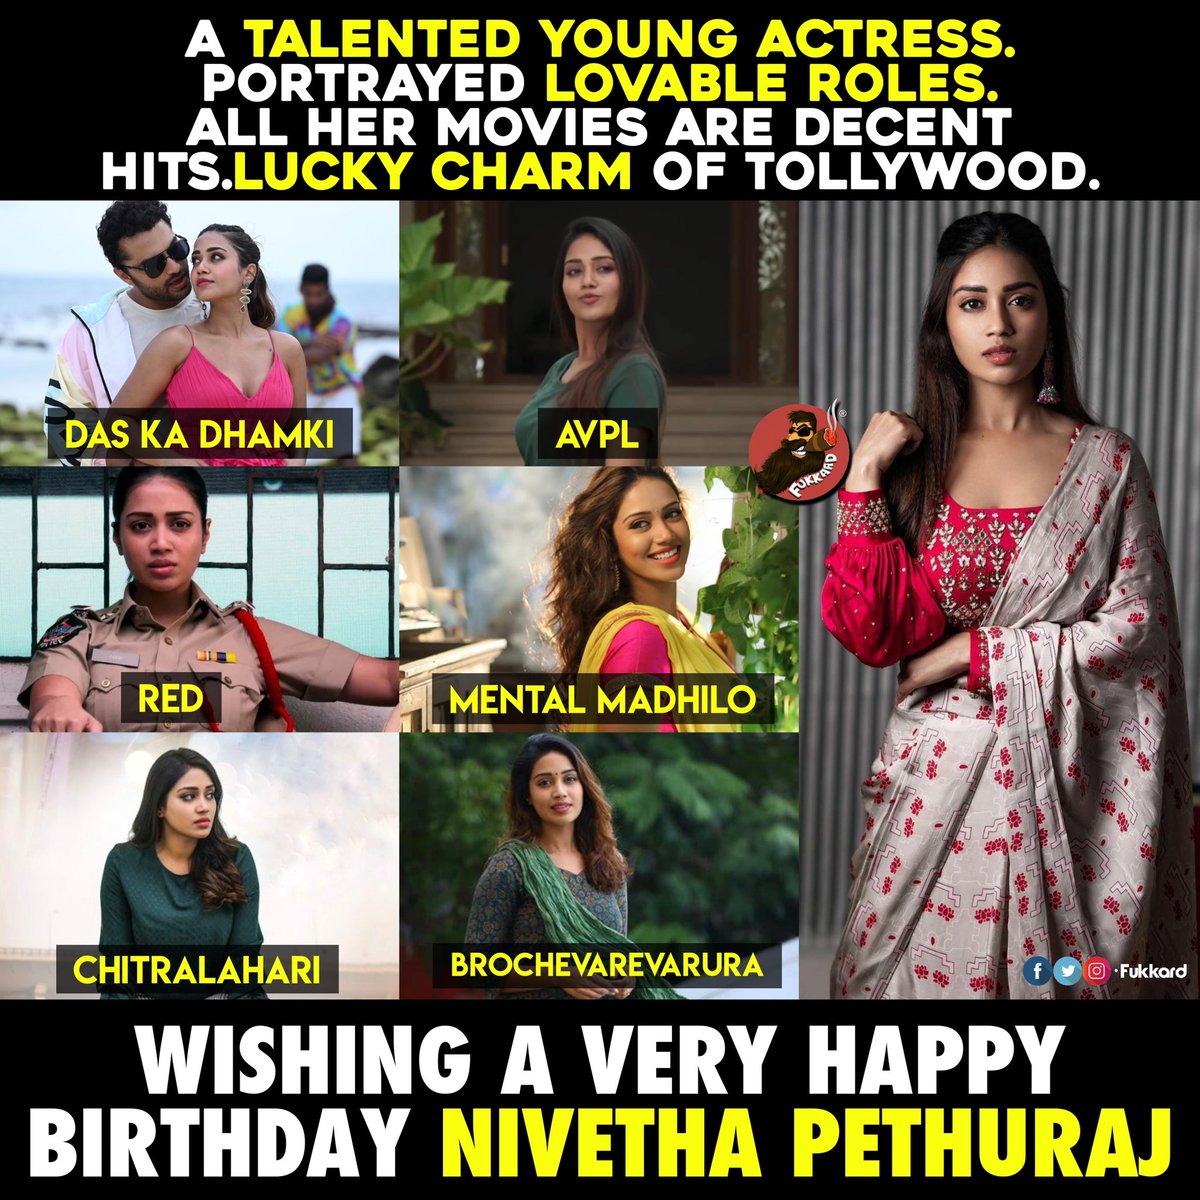 Birthday Wishes to #NivethaPethuraj #HBDNivethaPethuraj.
@Nivetha_Tweets